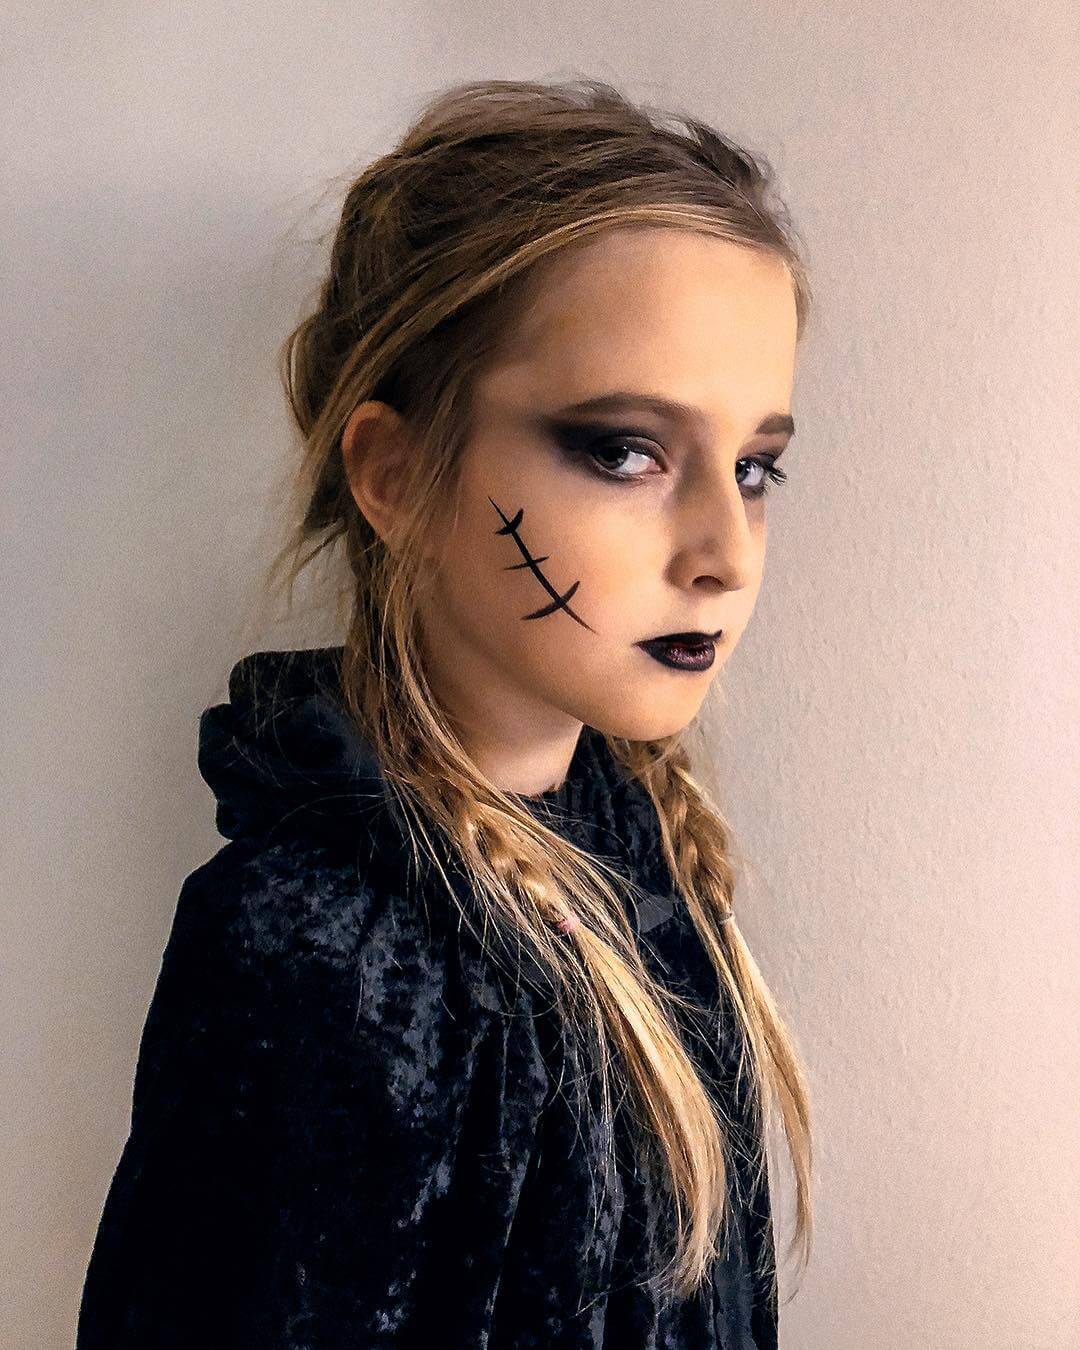 Kid's Halloween Makeup Emo look for Halloween for kids